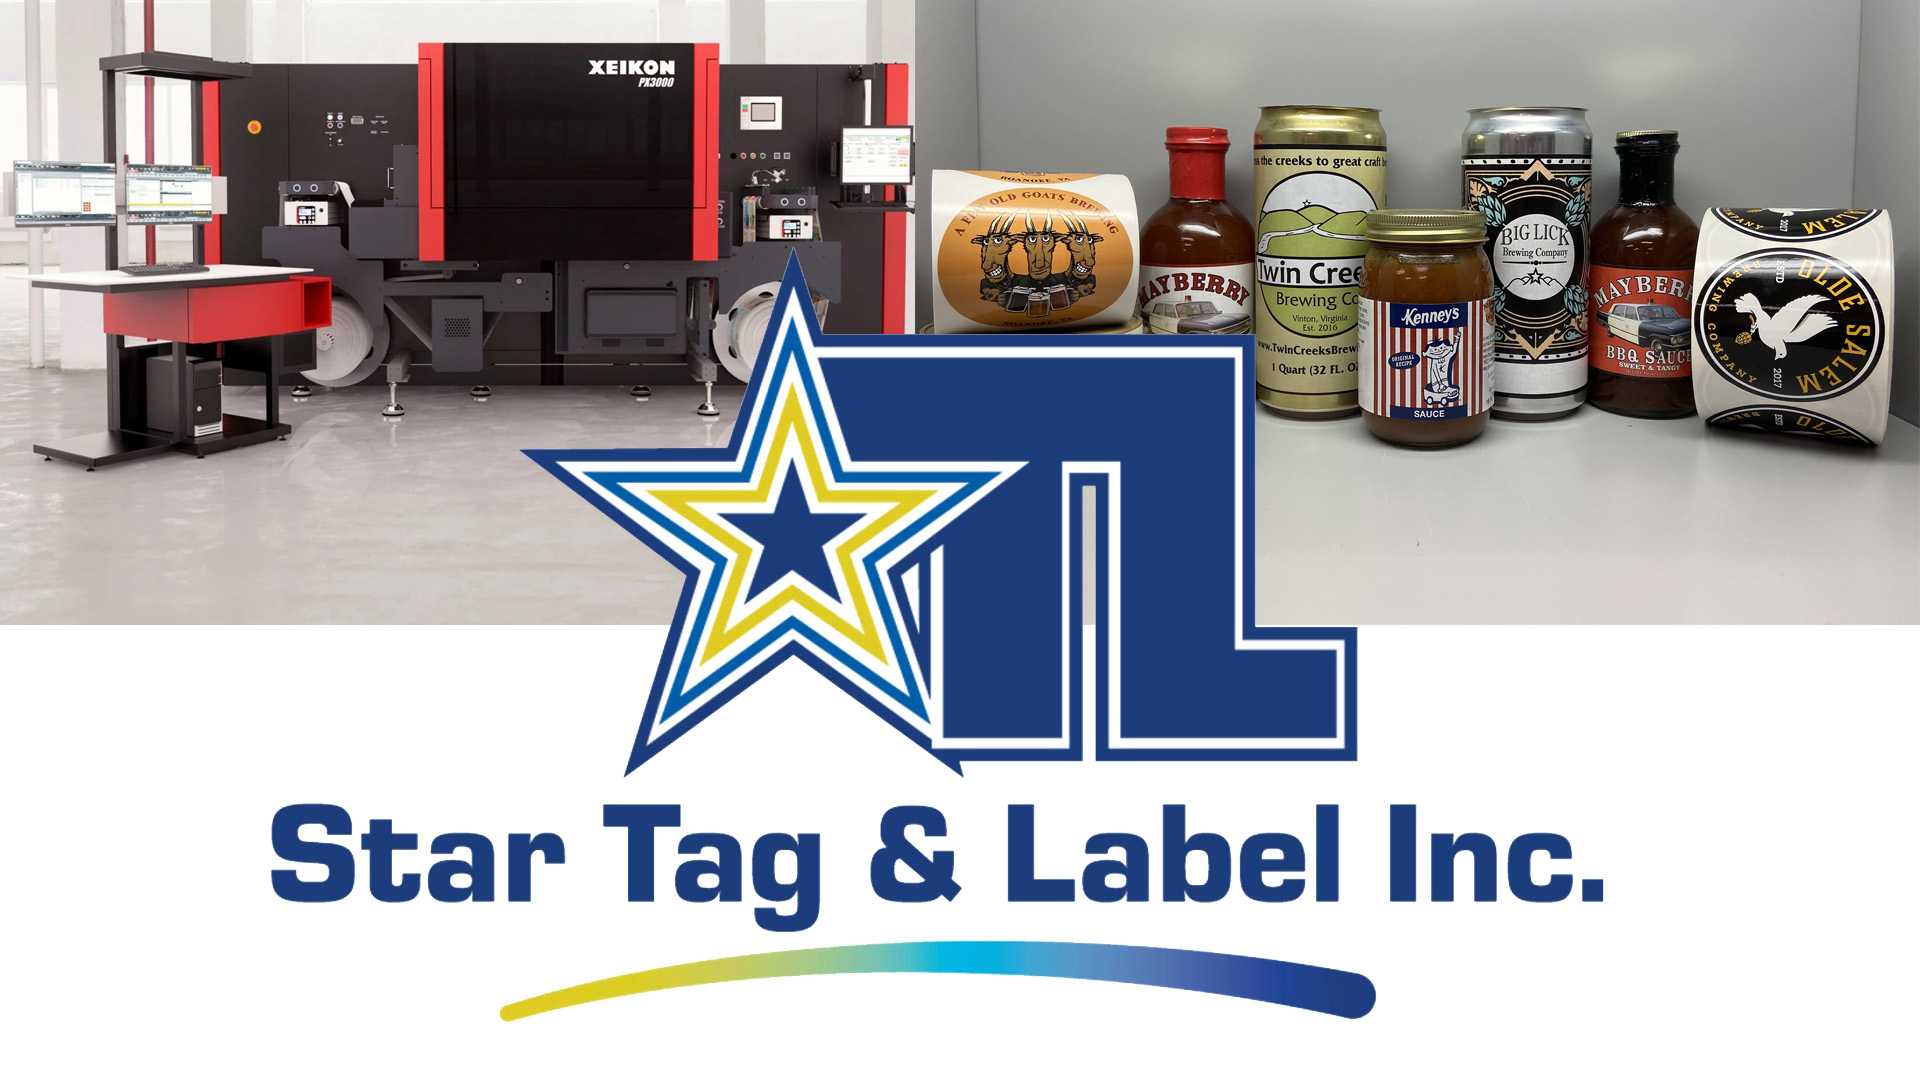 Star Tag & Label brilha com novos recursos digitais da Xeikon